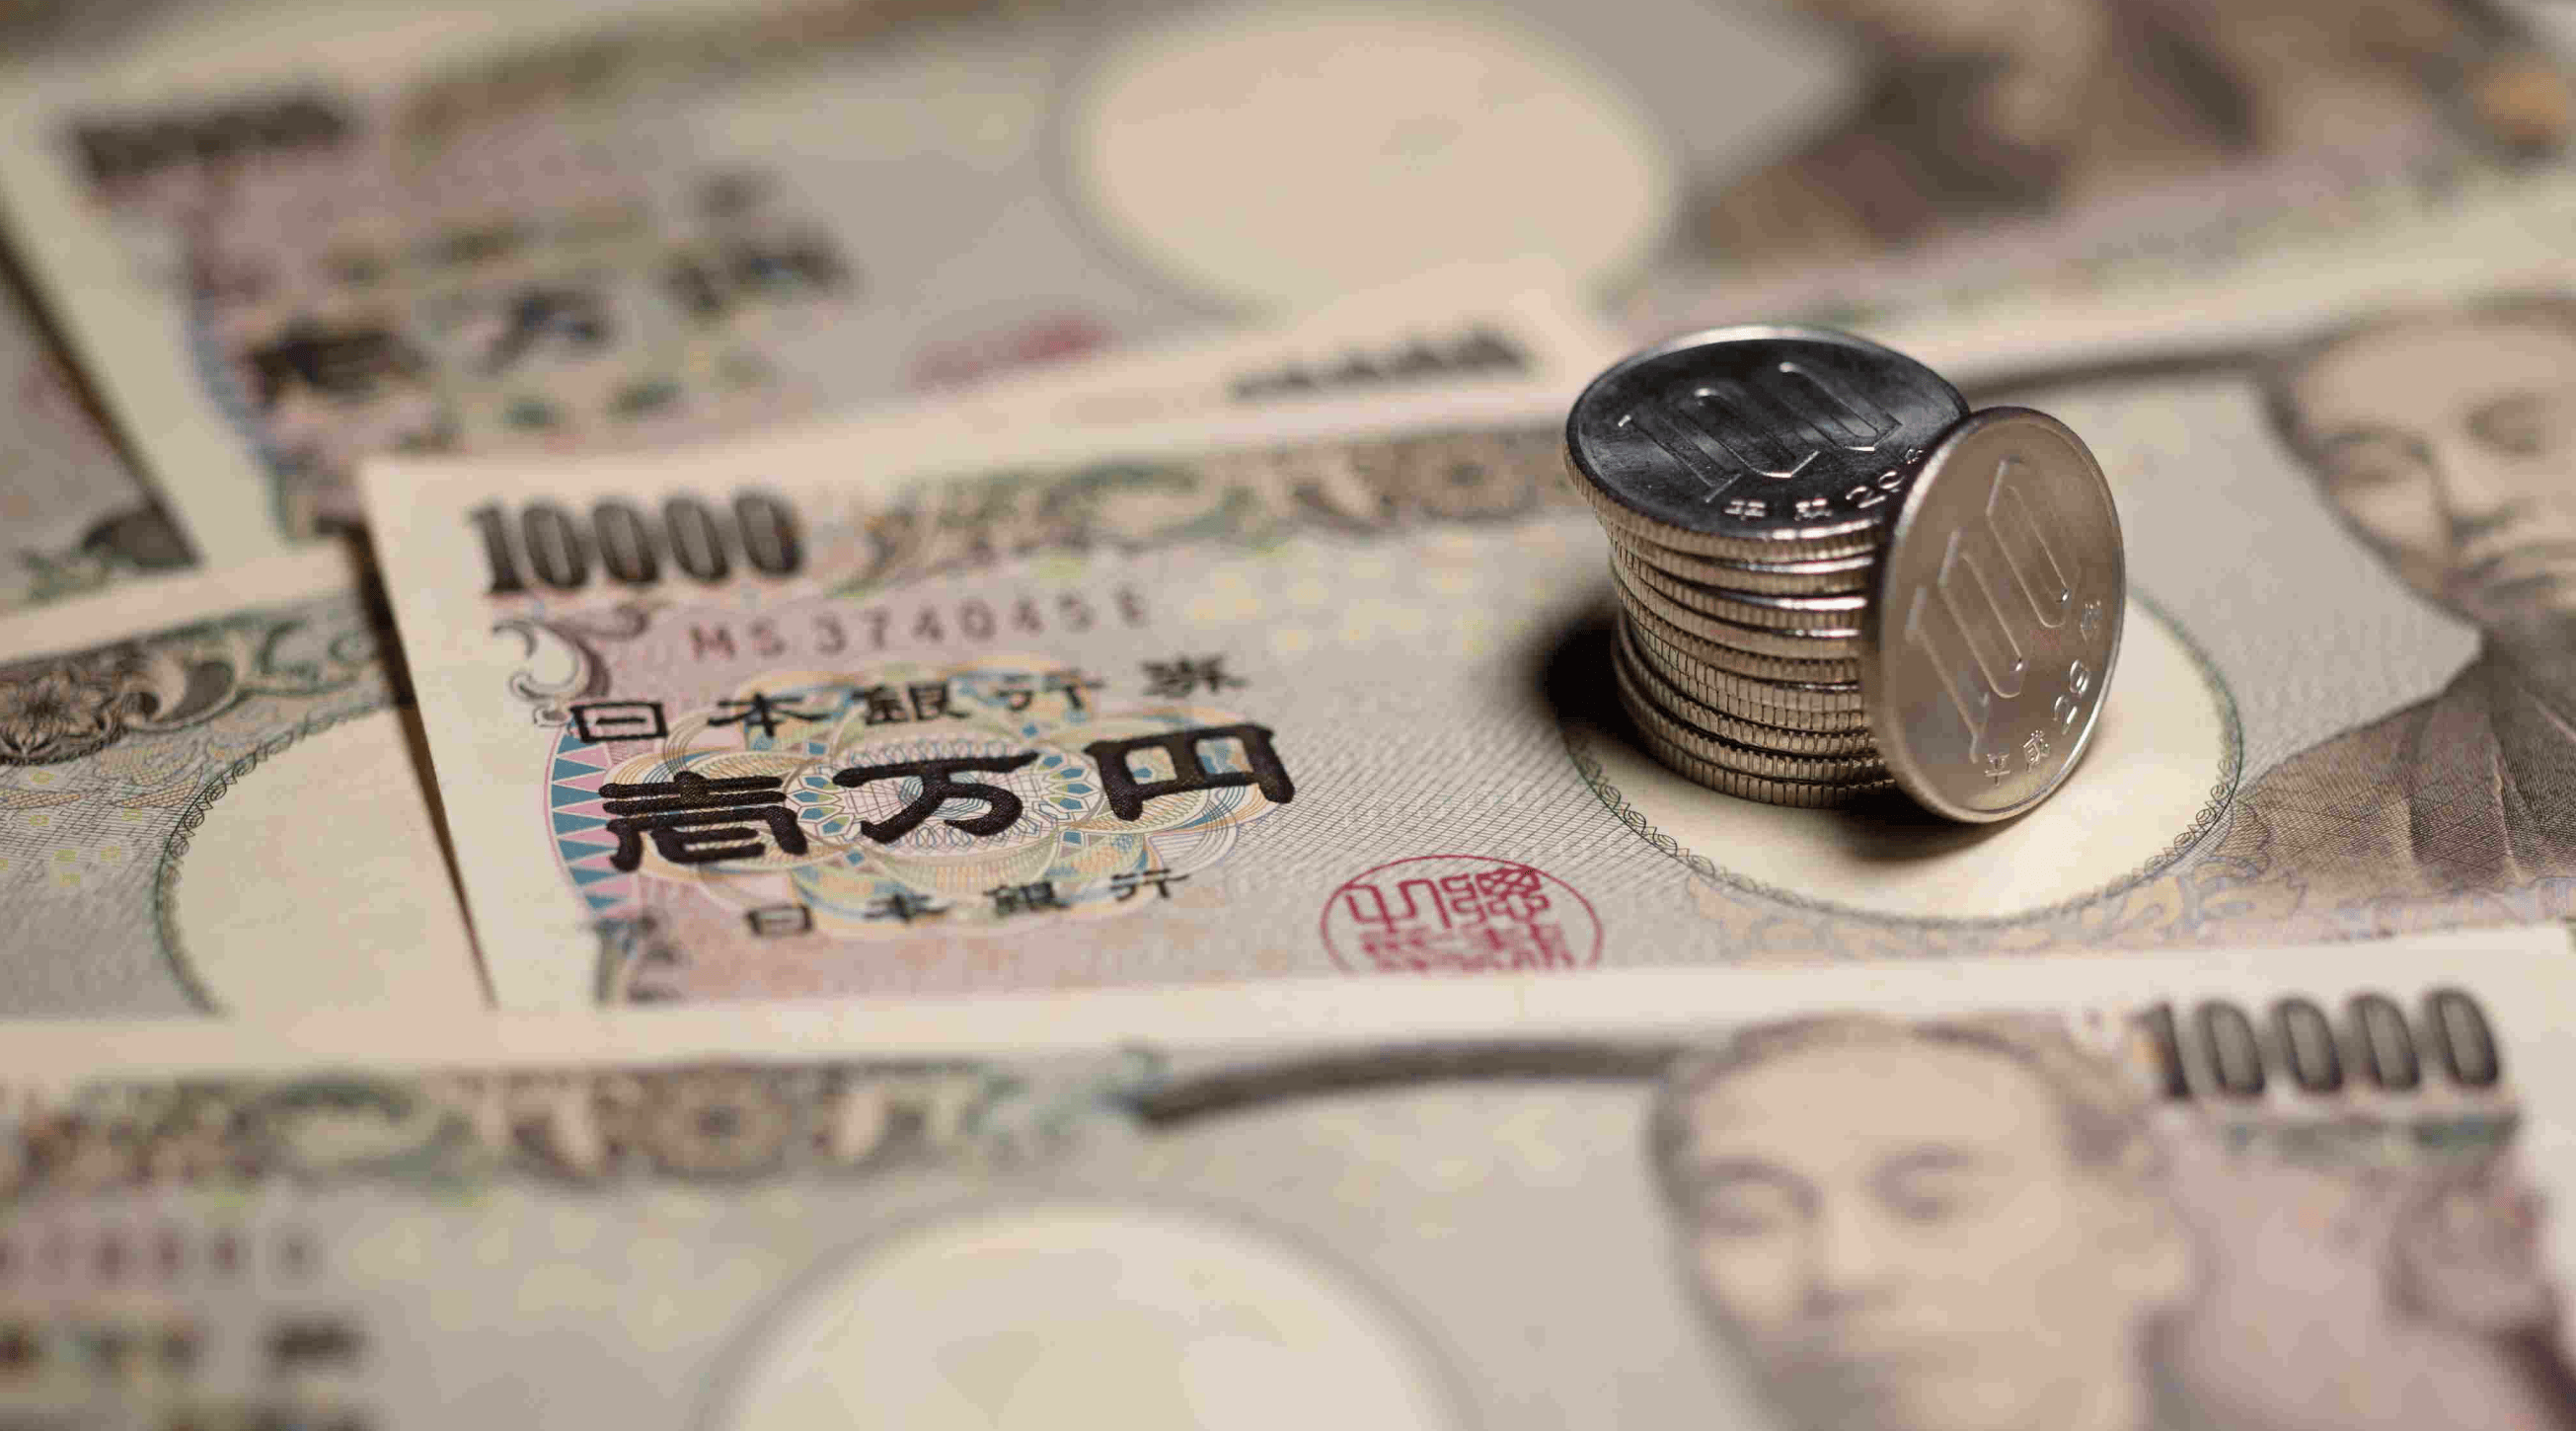   日元迅速贬值，它是成五一最热门的目的地。游客:买买能省一万多。 